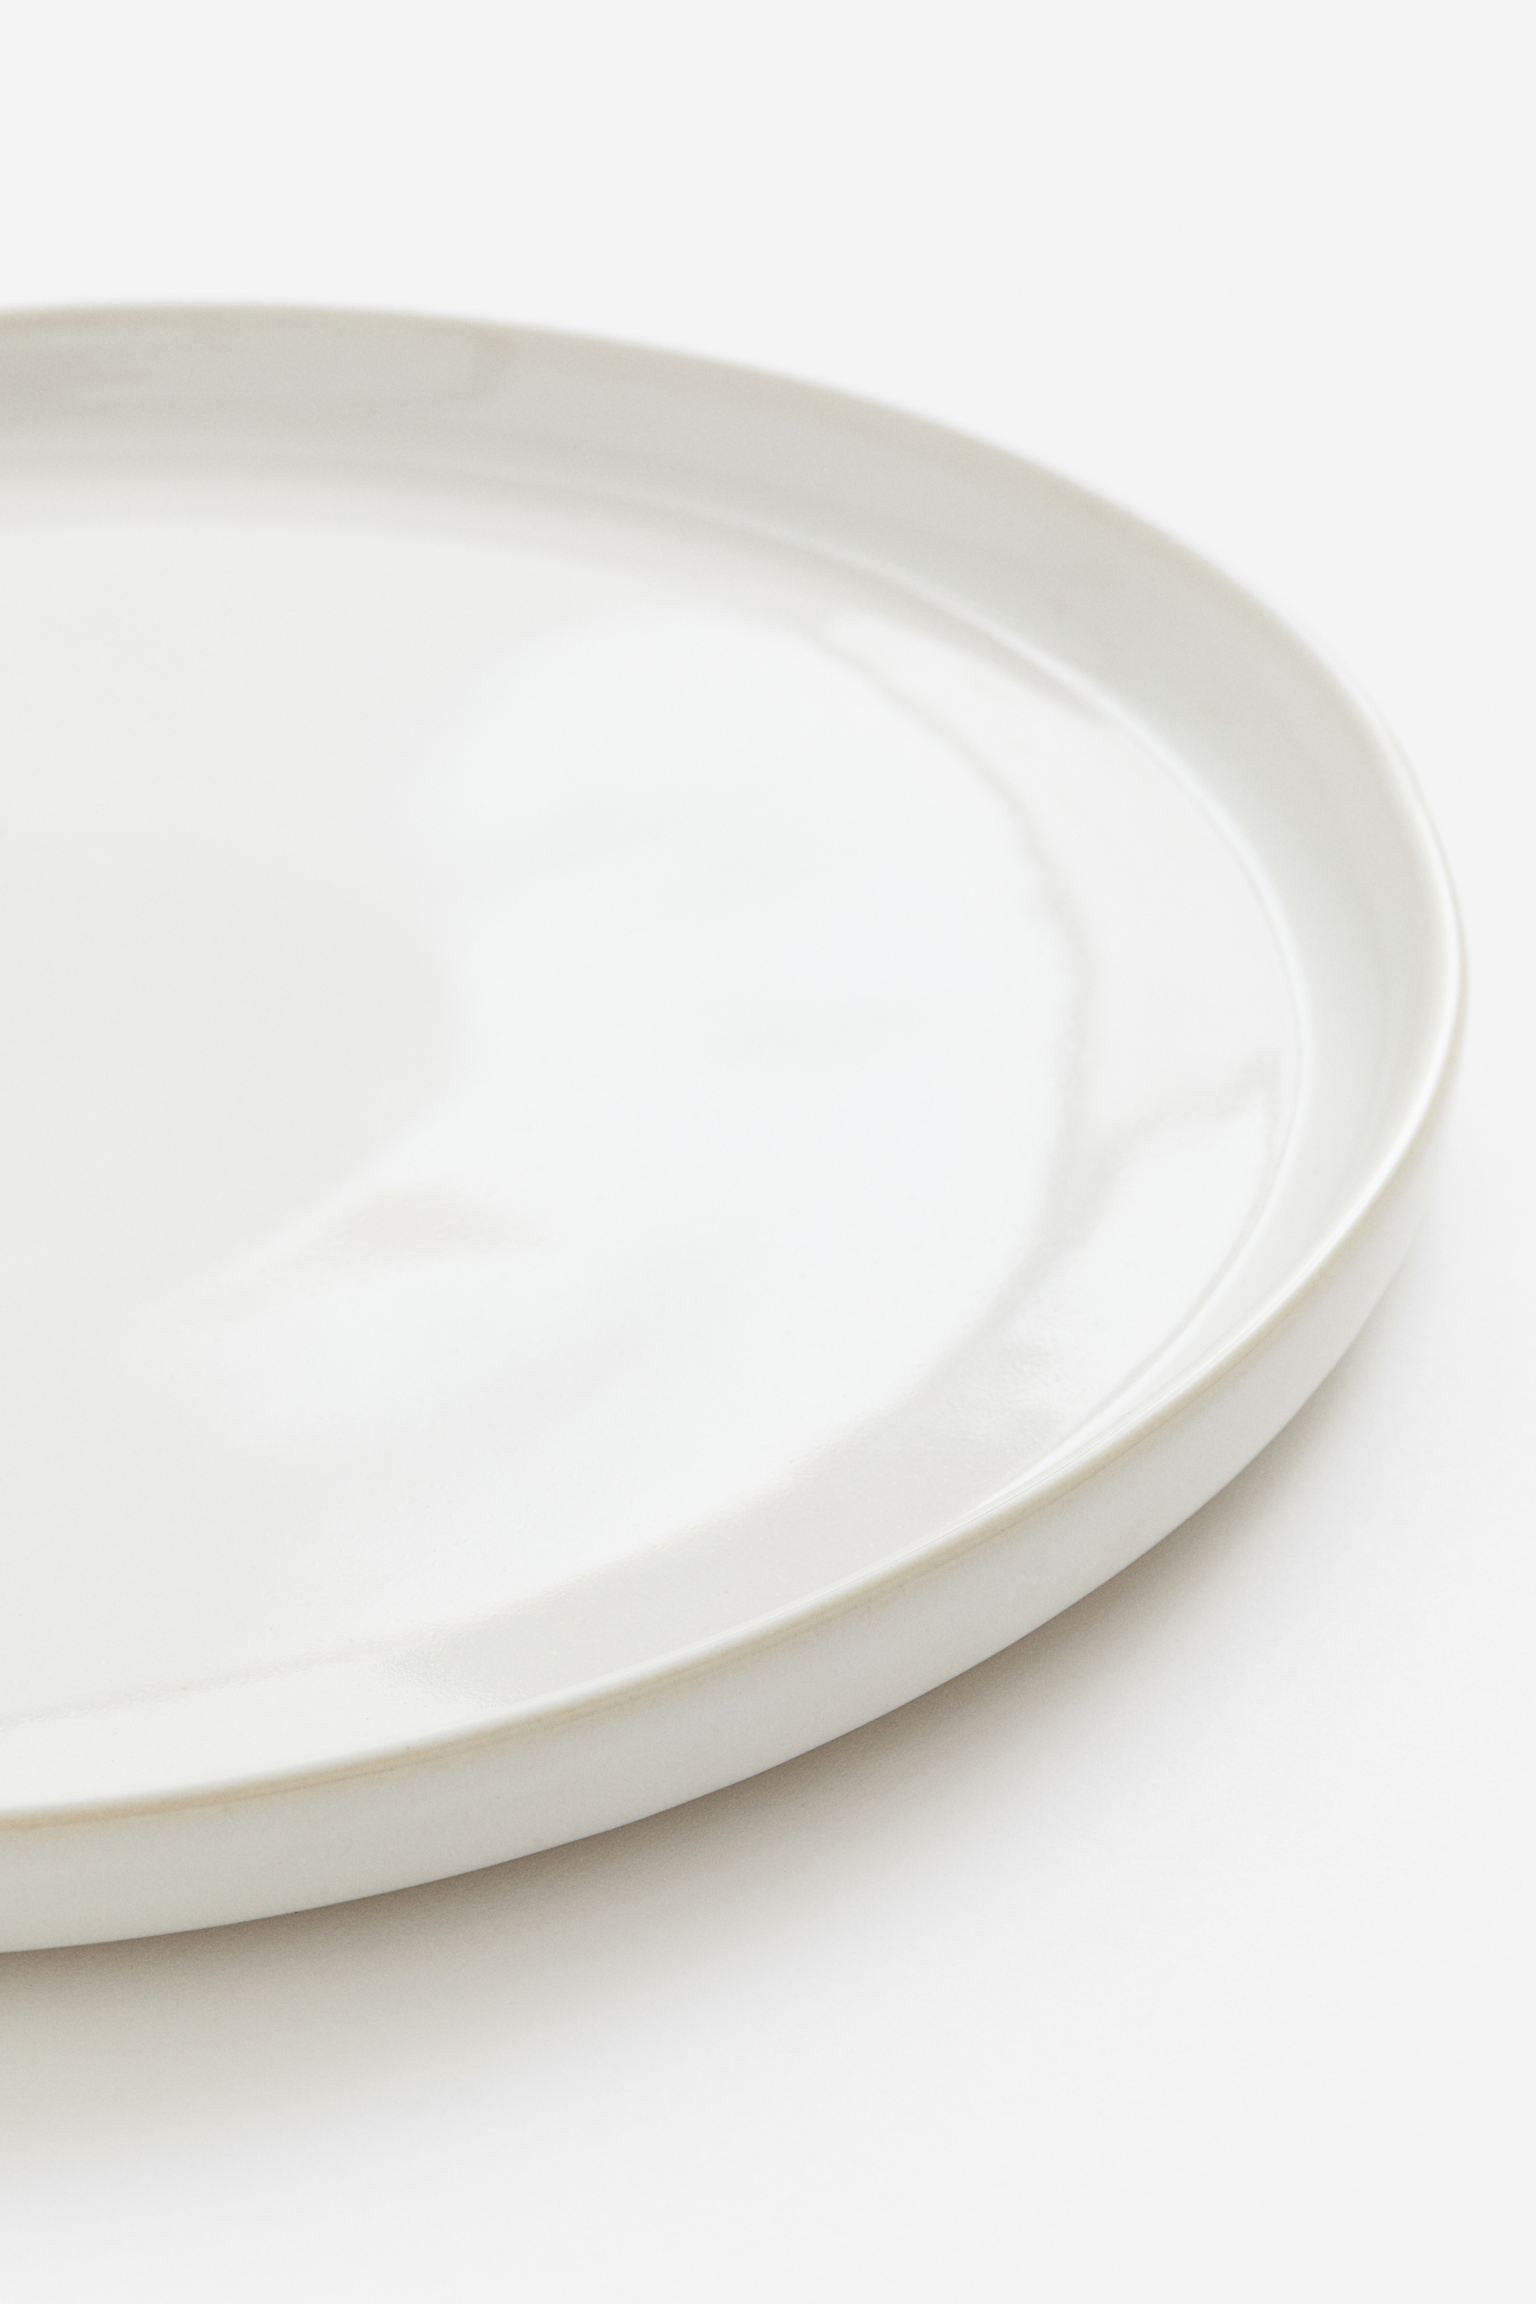 Большая керамическая тарелка, Натуральный белый/глянцевый